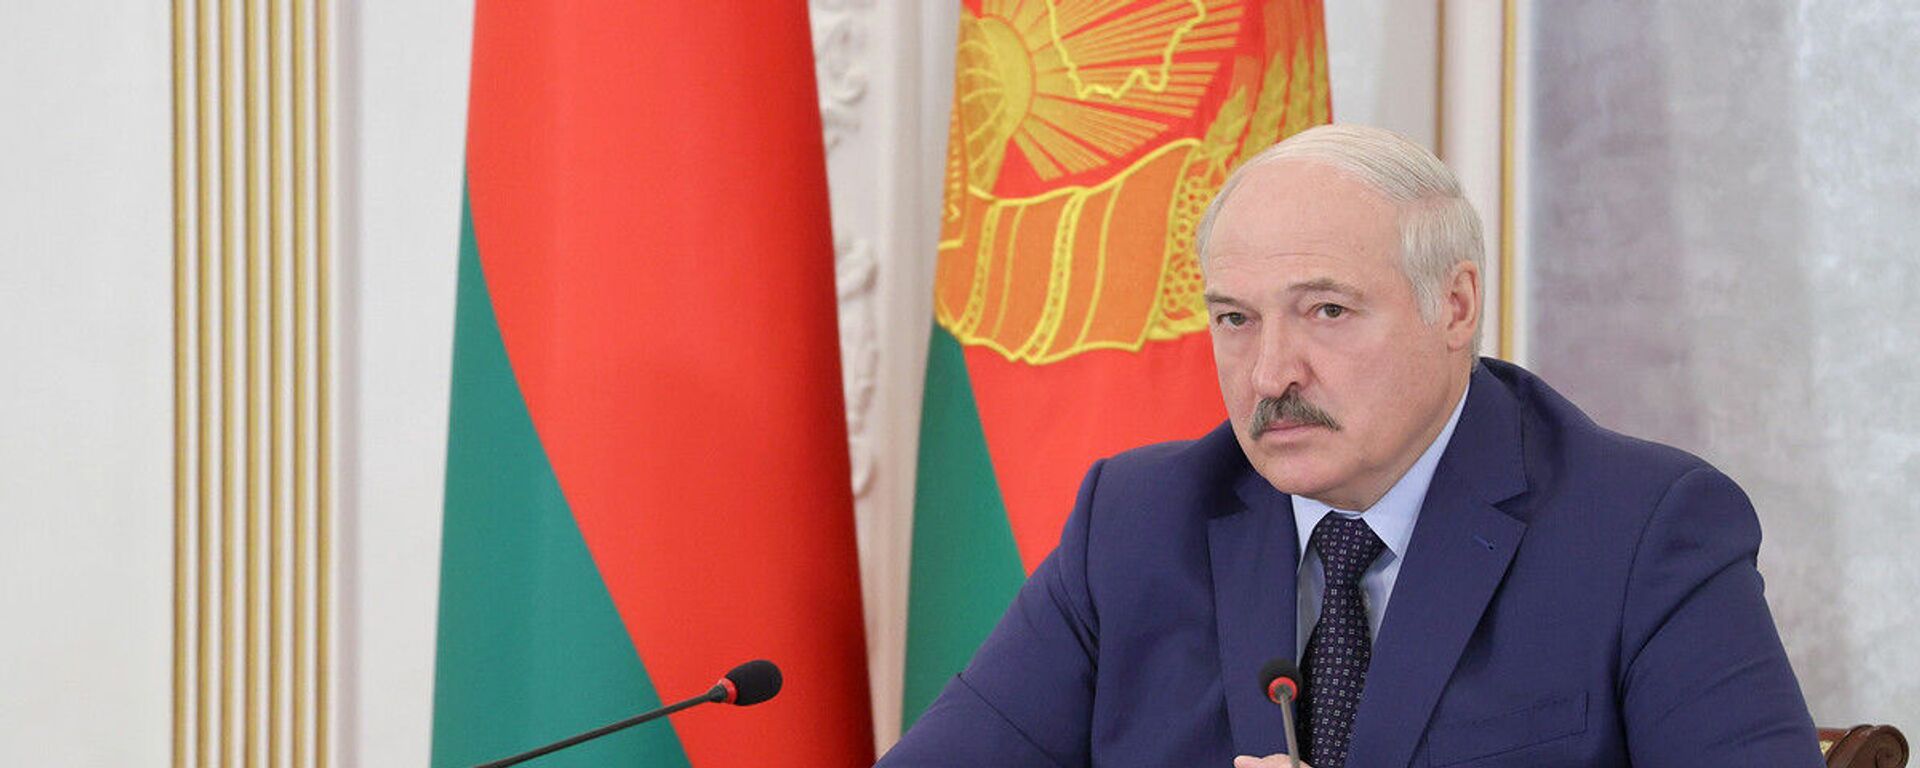 Александр Лукашенко во время заседания Высшего Евразийского экономического совета - Sputnik Беларусь, 1920, 25.11.2021